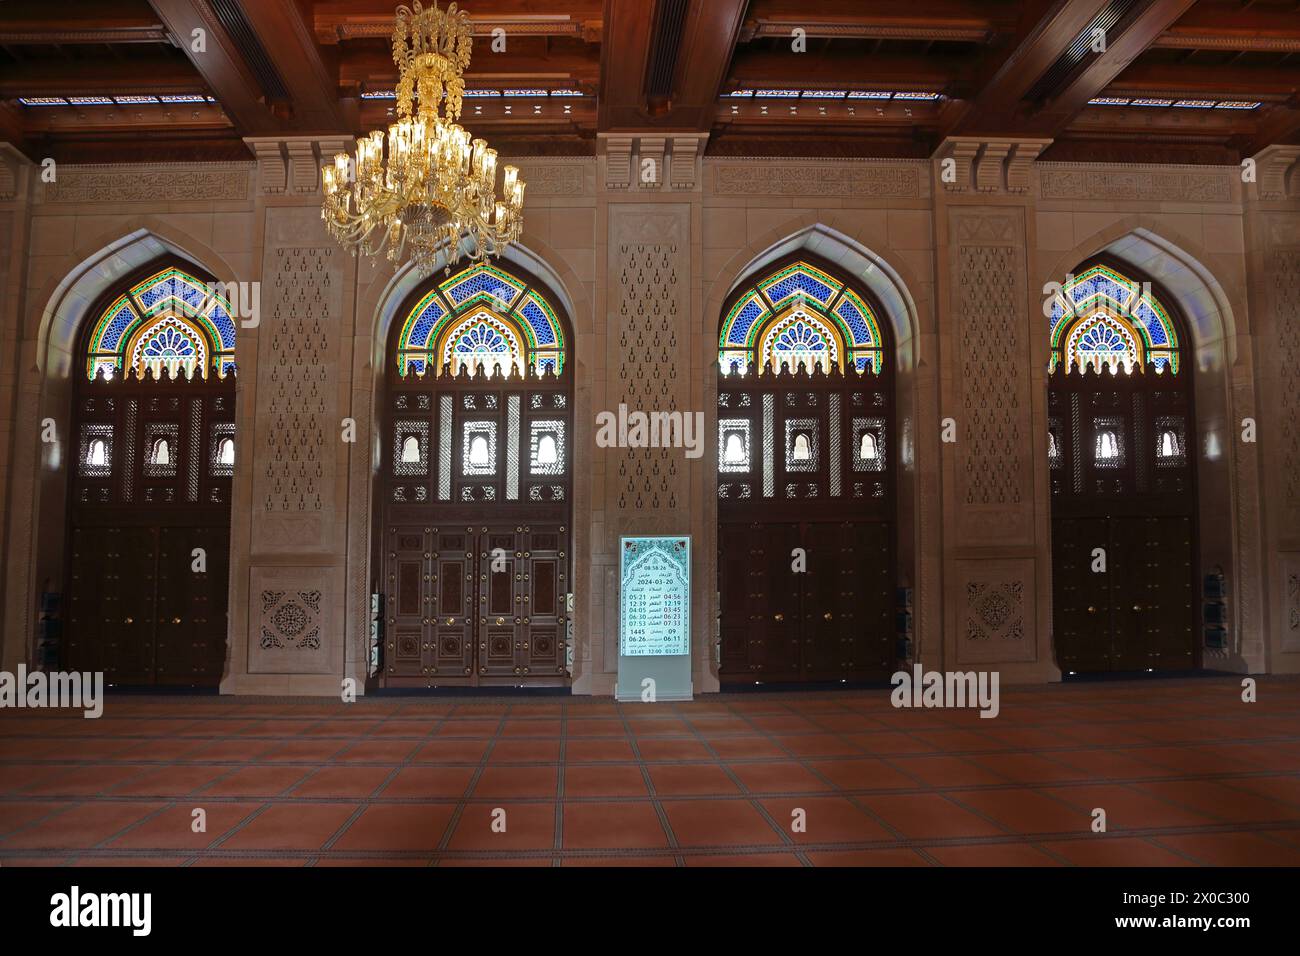 Sultan Qaboos Grand Mosquée intérieur de la salle de prière des femmes avec plafond omanais en bois et lustre Muscat Oman Banque D'Images